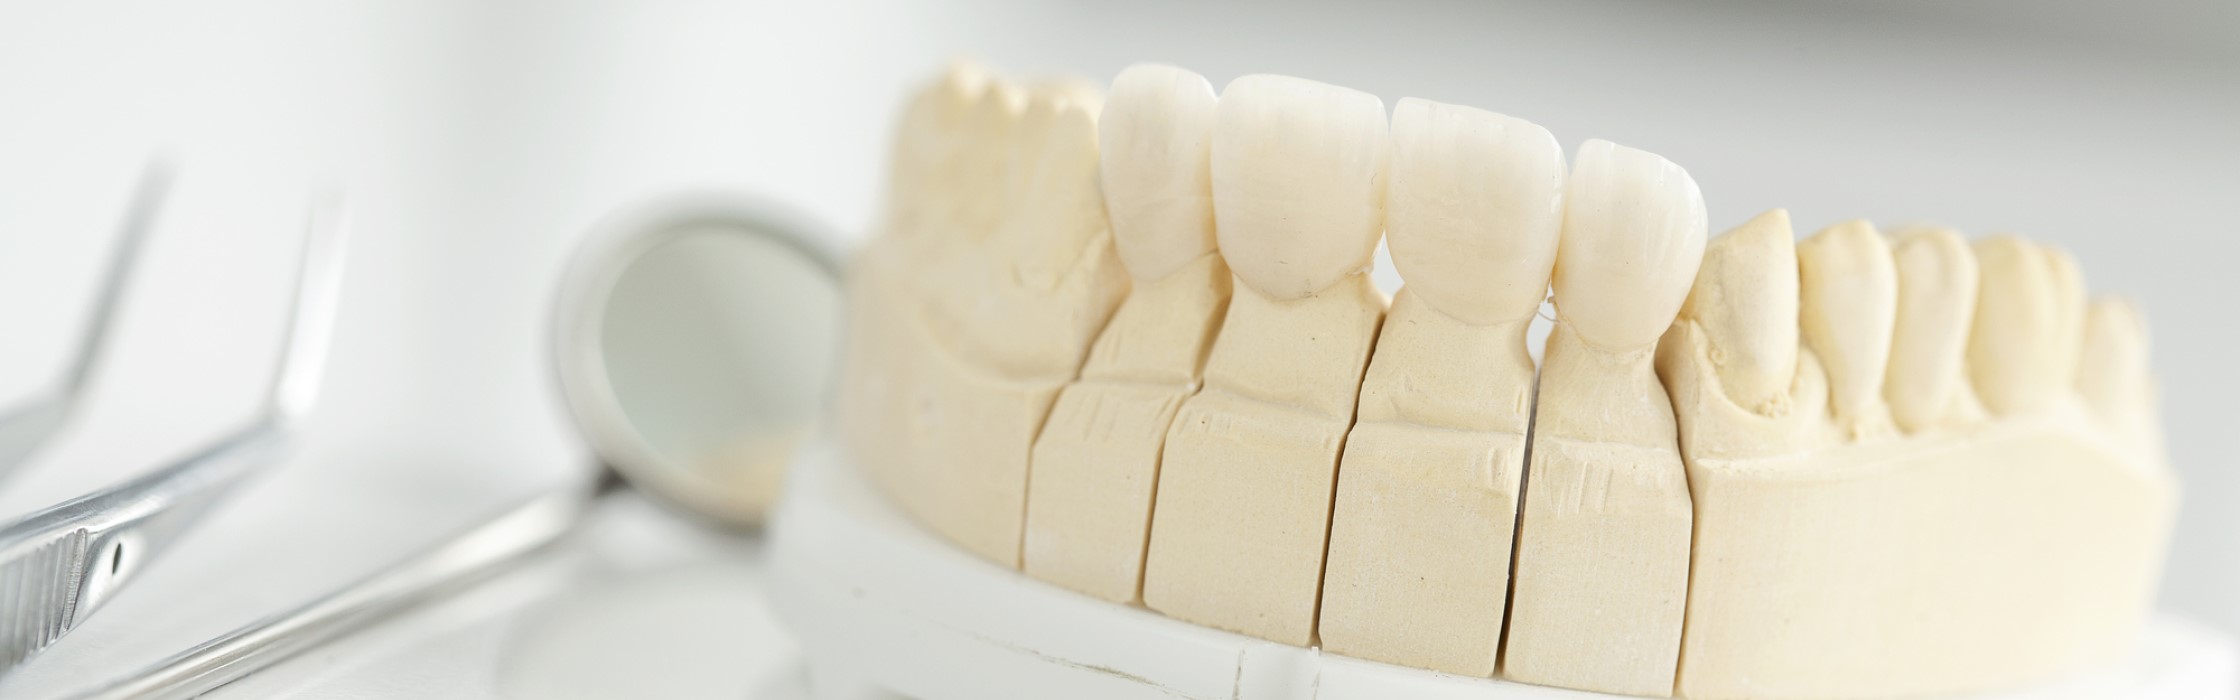 Zirkonkrone: Vorteile und Kosten des Zahnersatzes